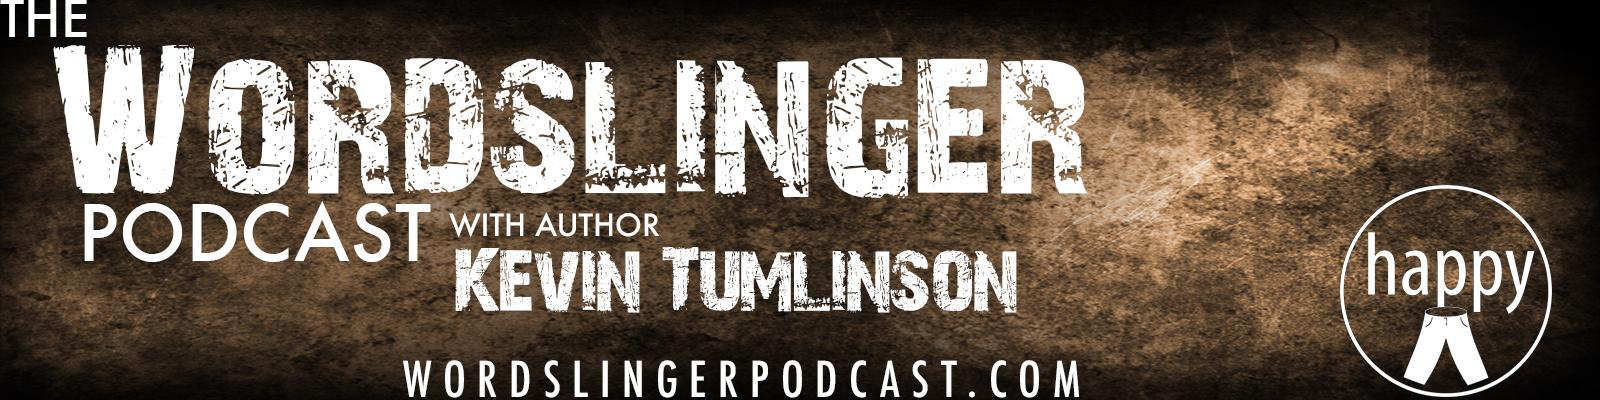 Wordslinger Podcast